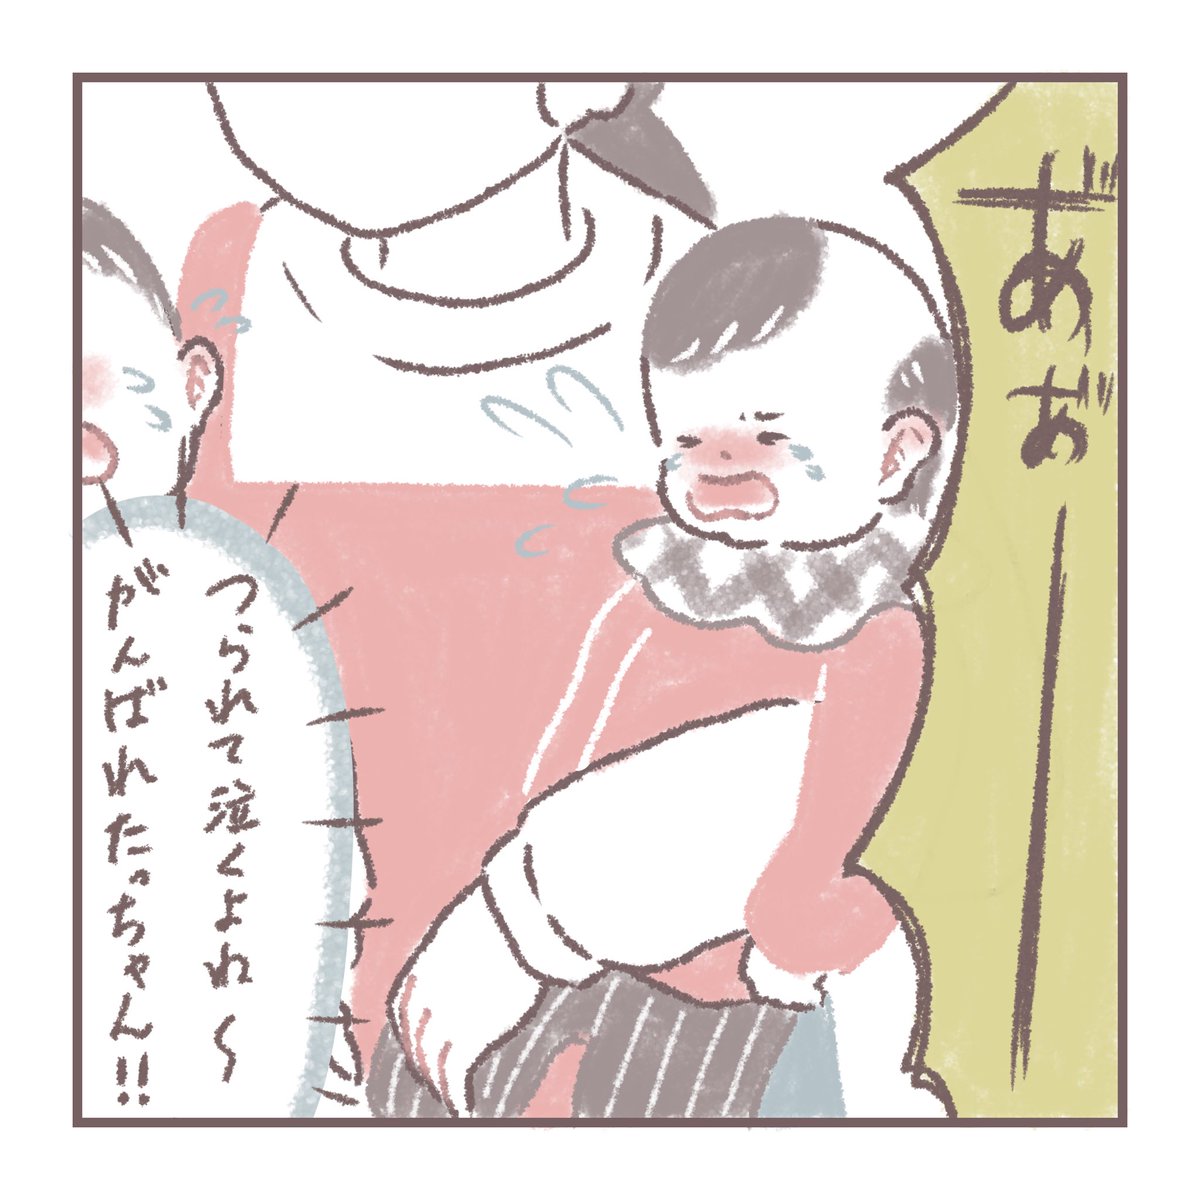 慣らし保育初日 1/2
#育児絵日記 #育児漫画 